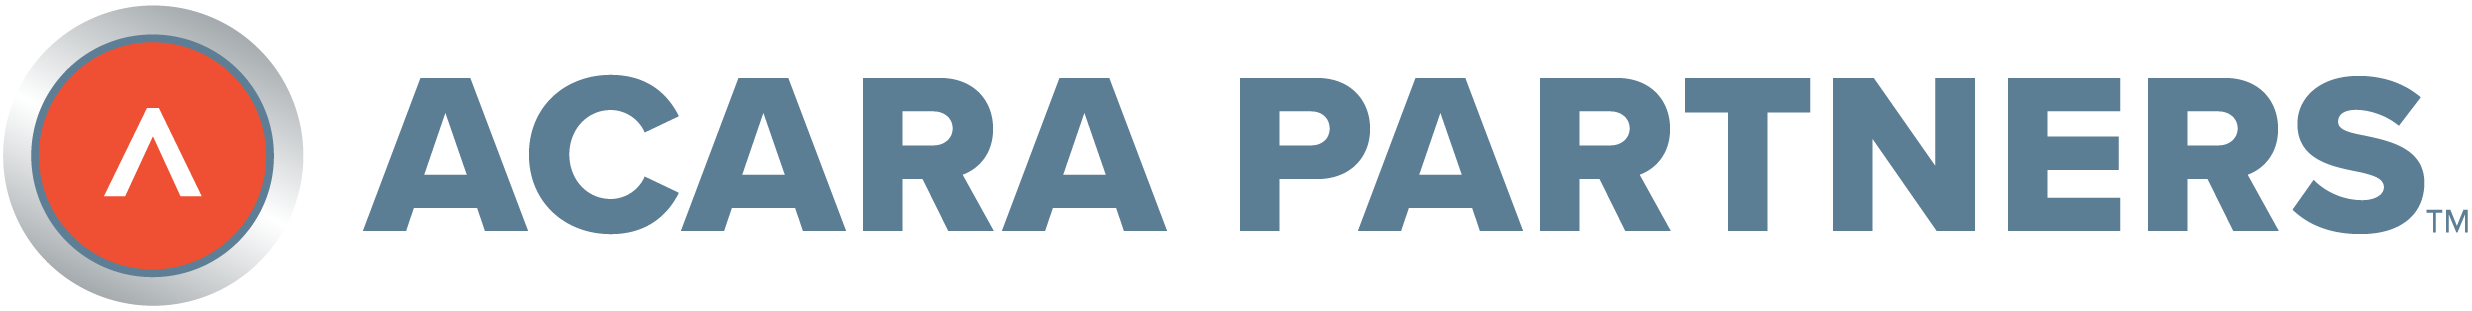 Acara Partners logo